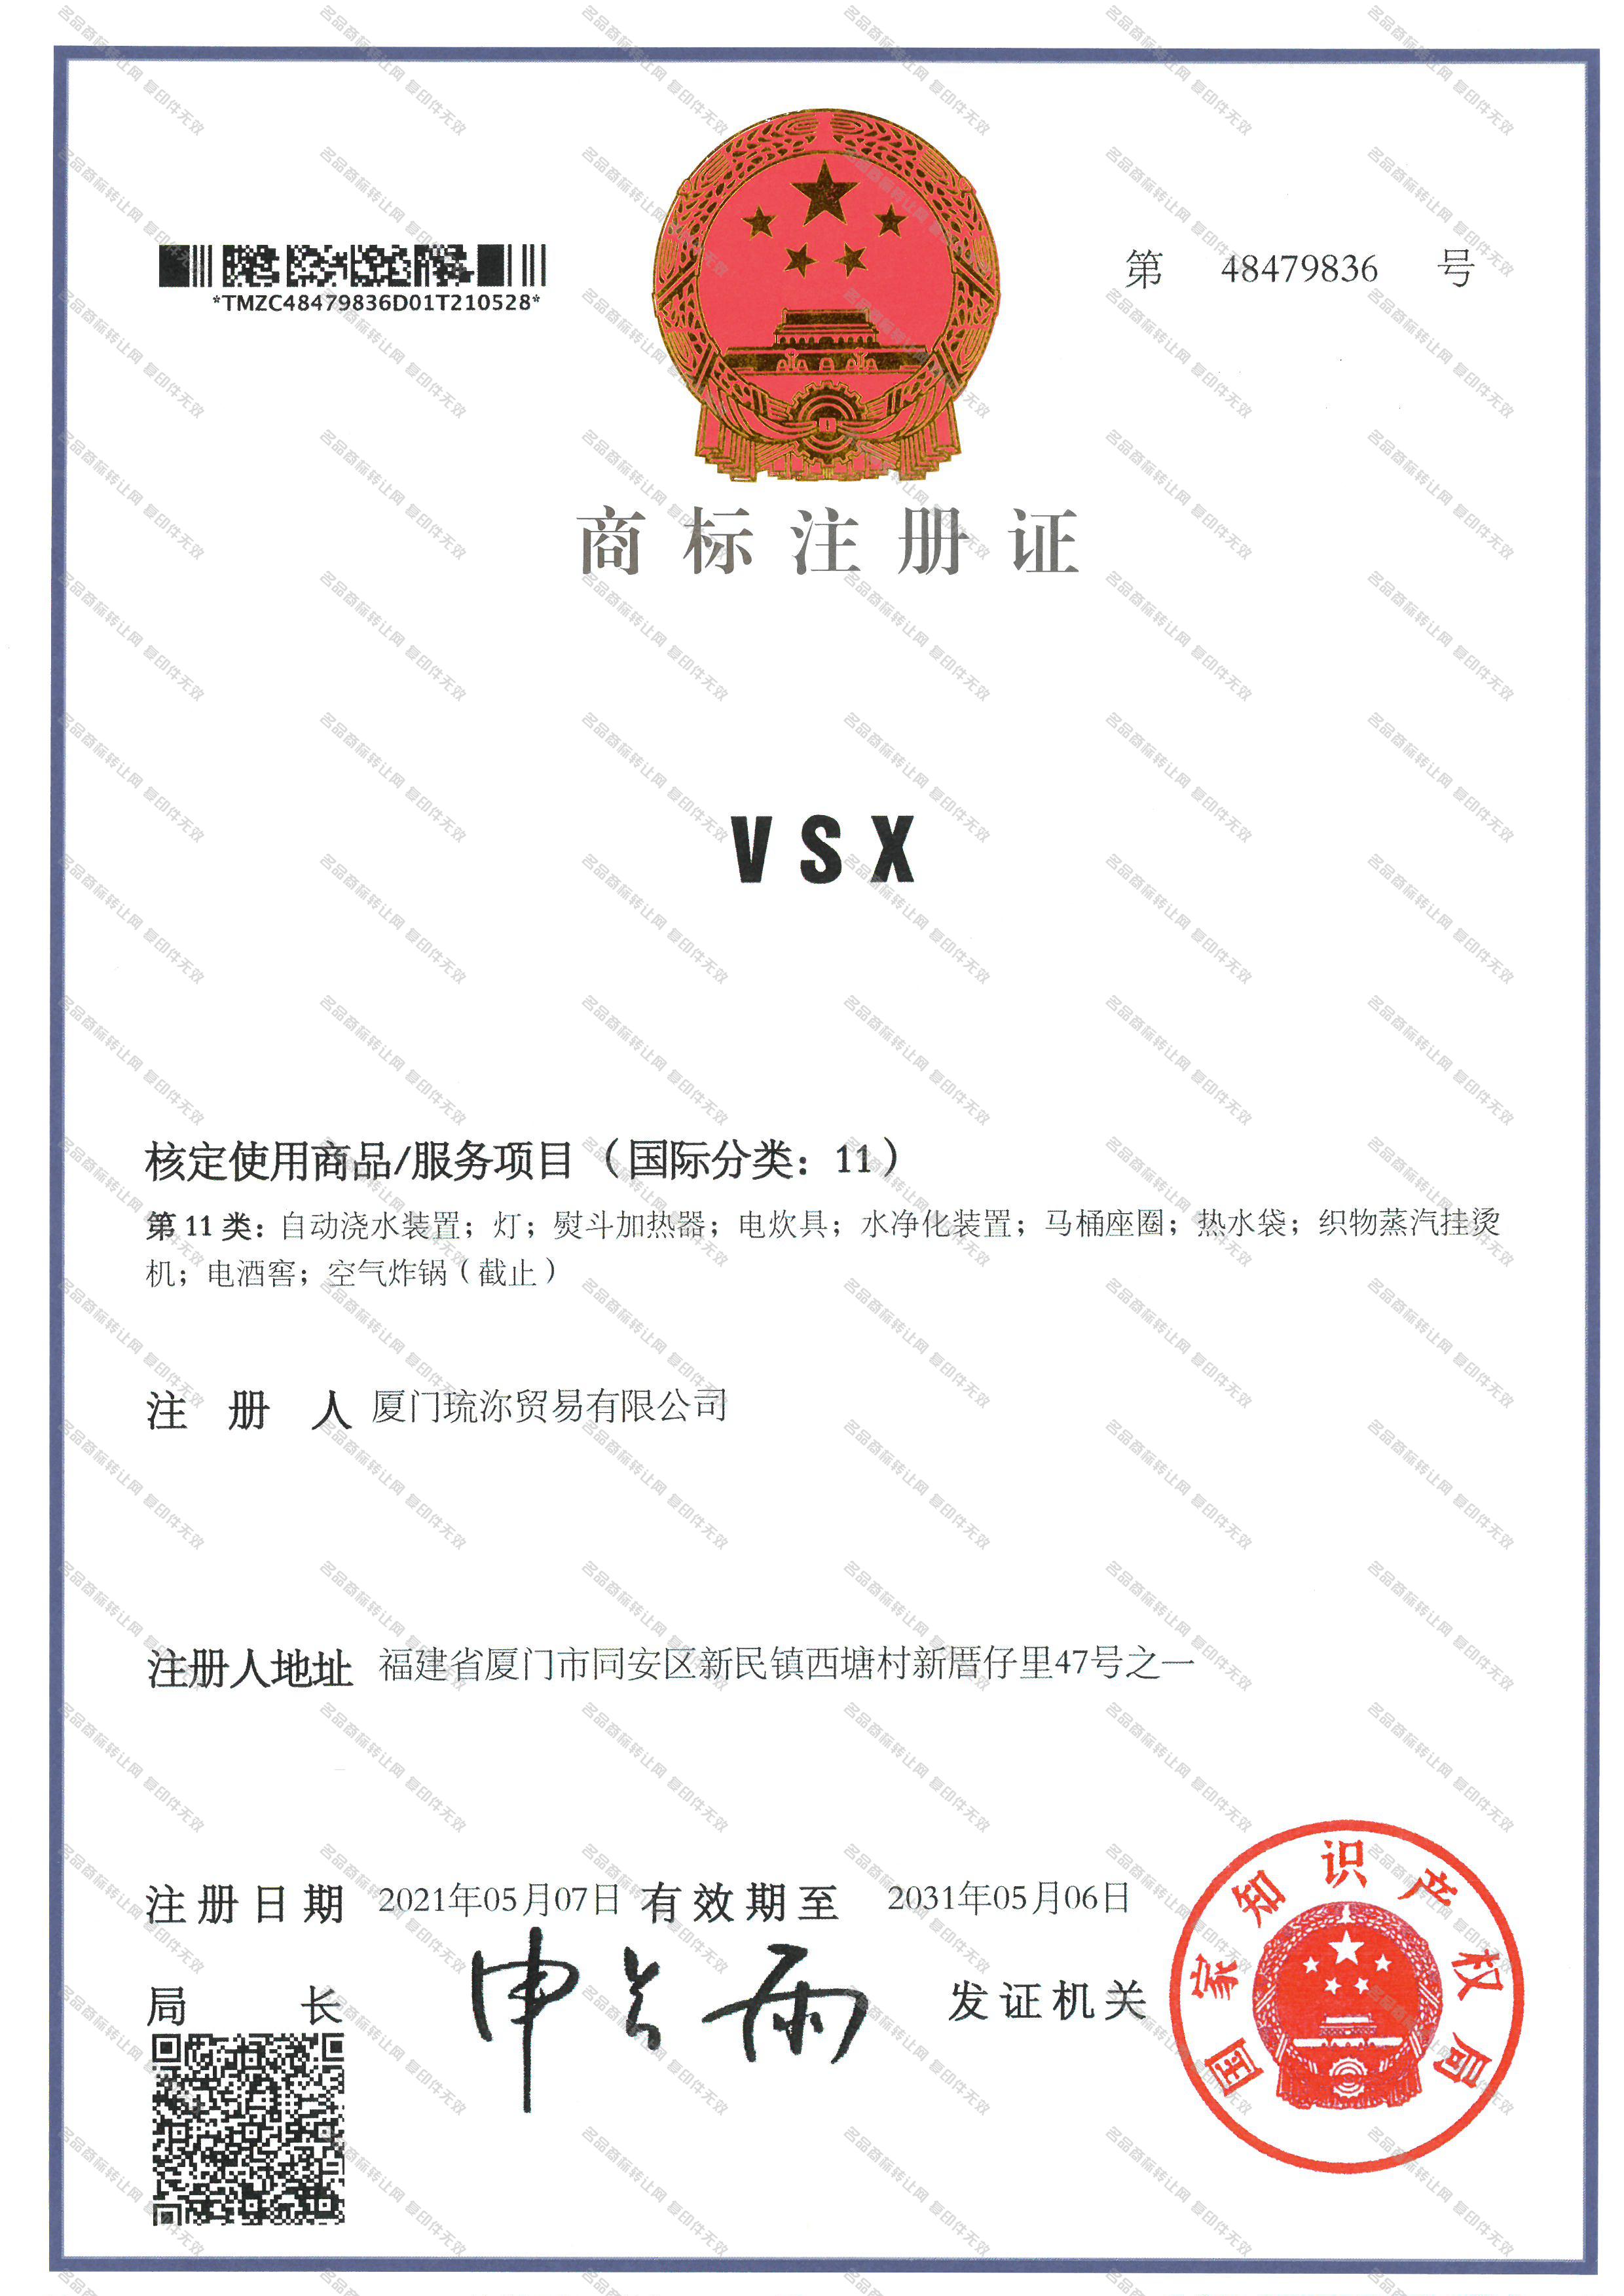 VSX注册证